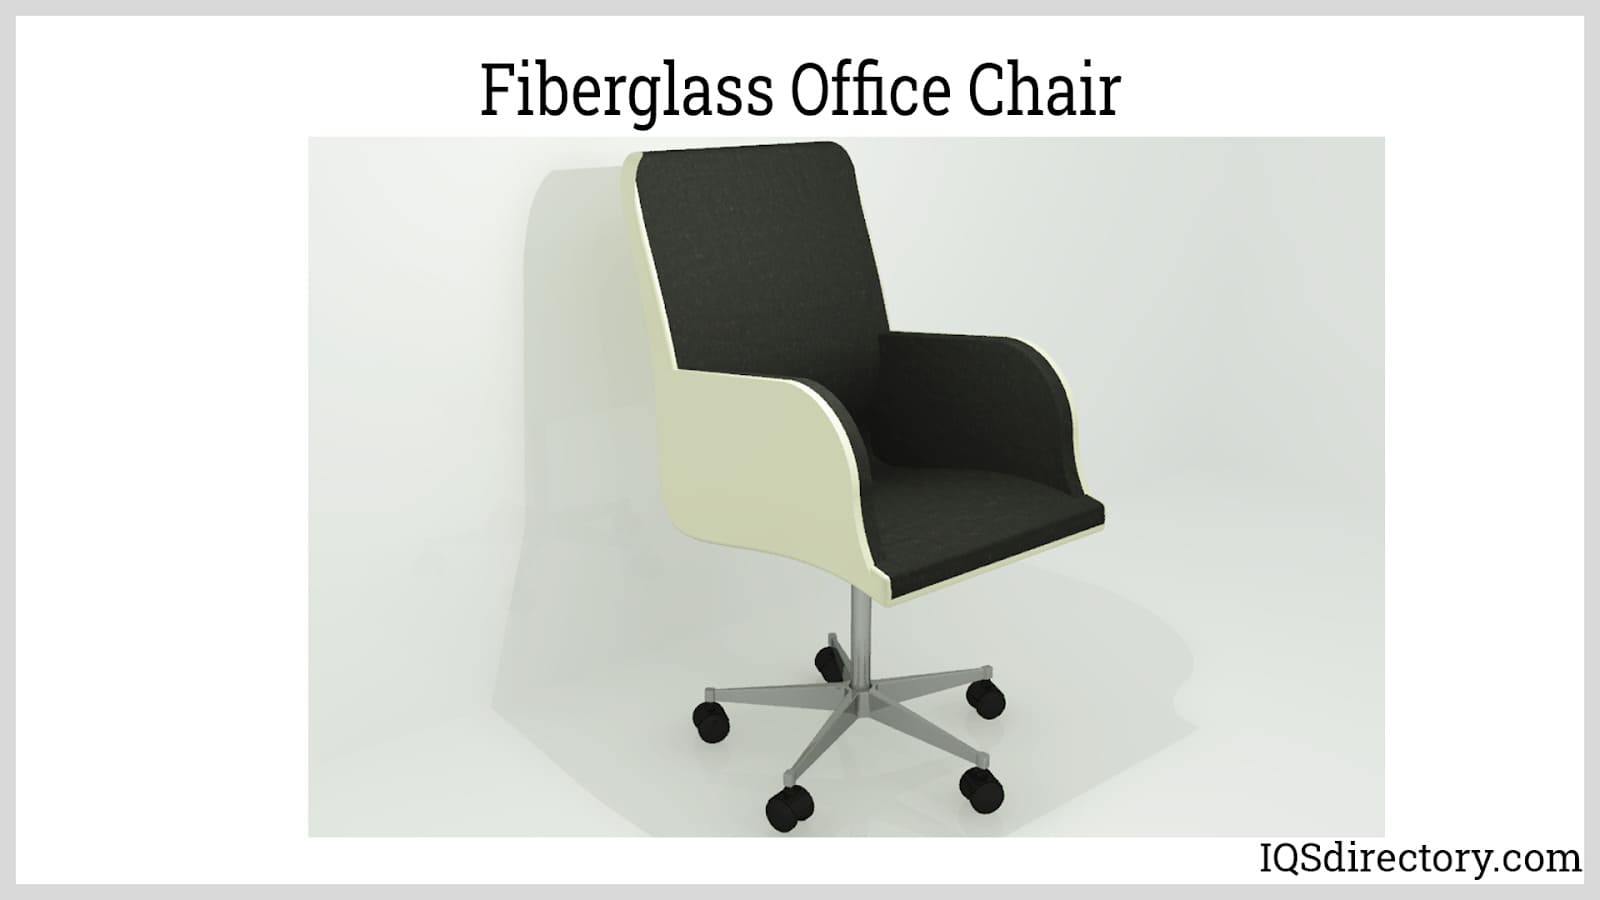 Fiberglass Office Chair